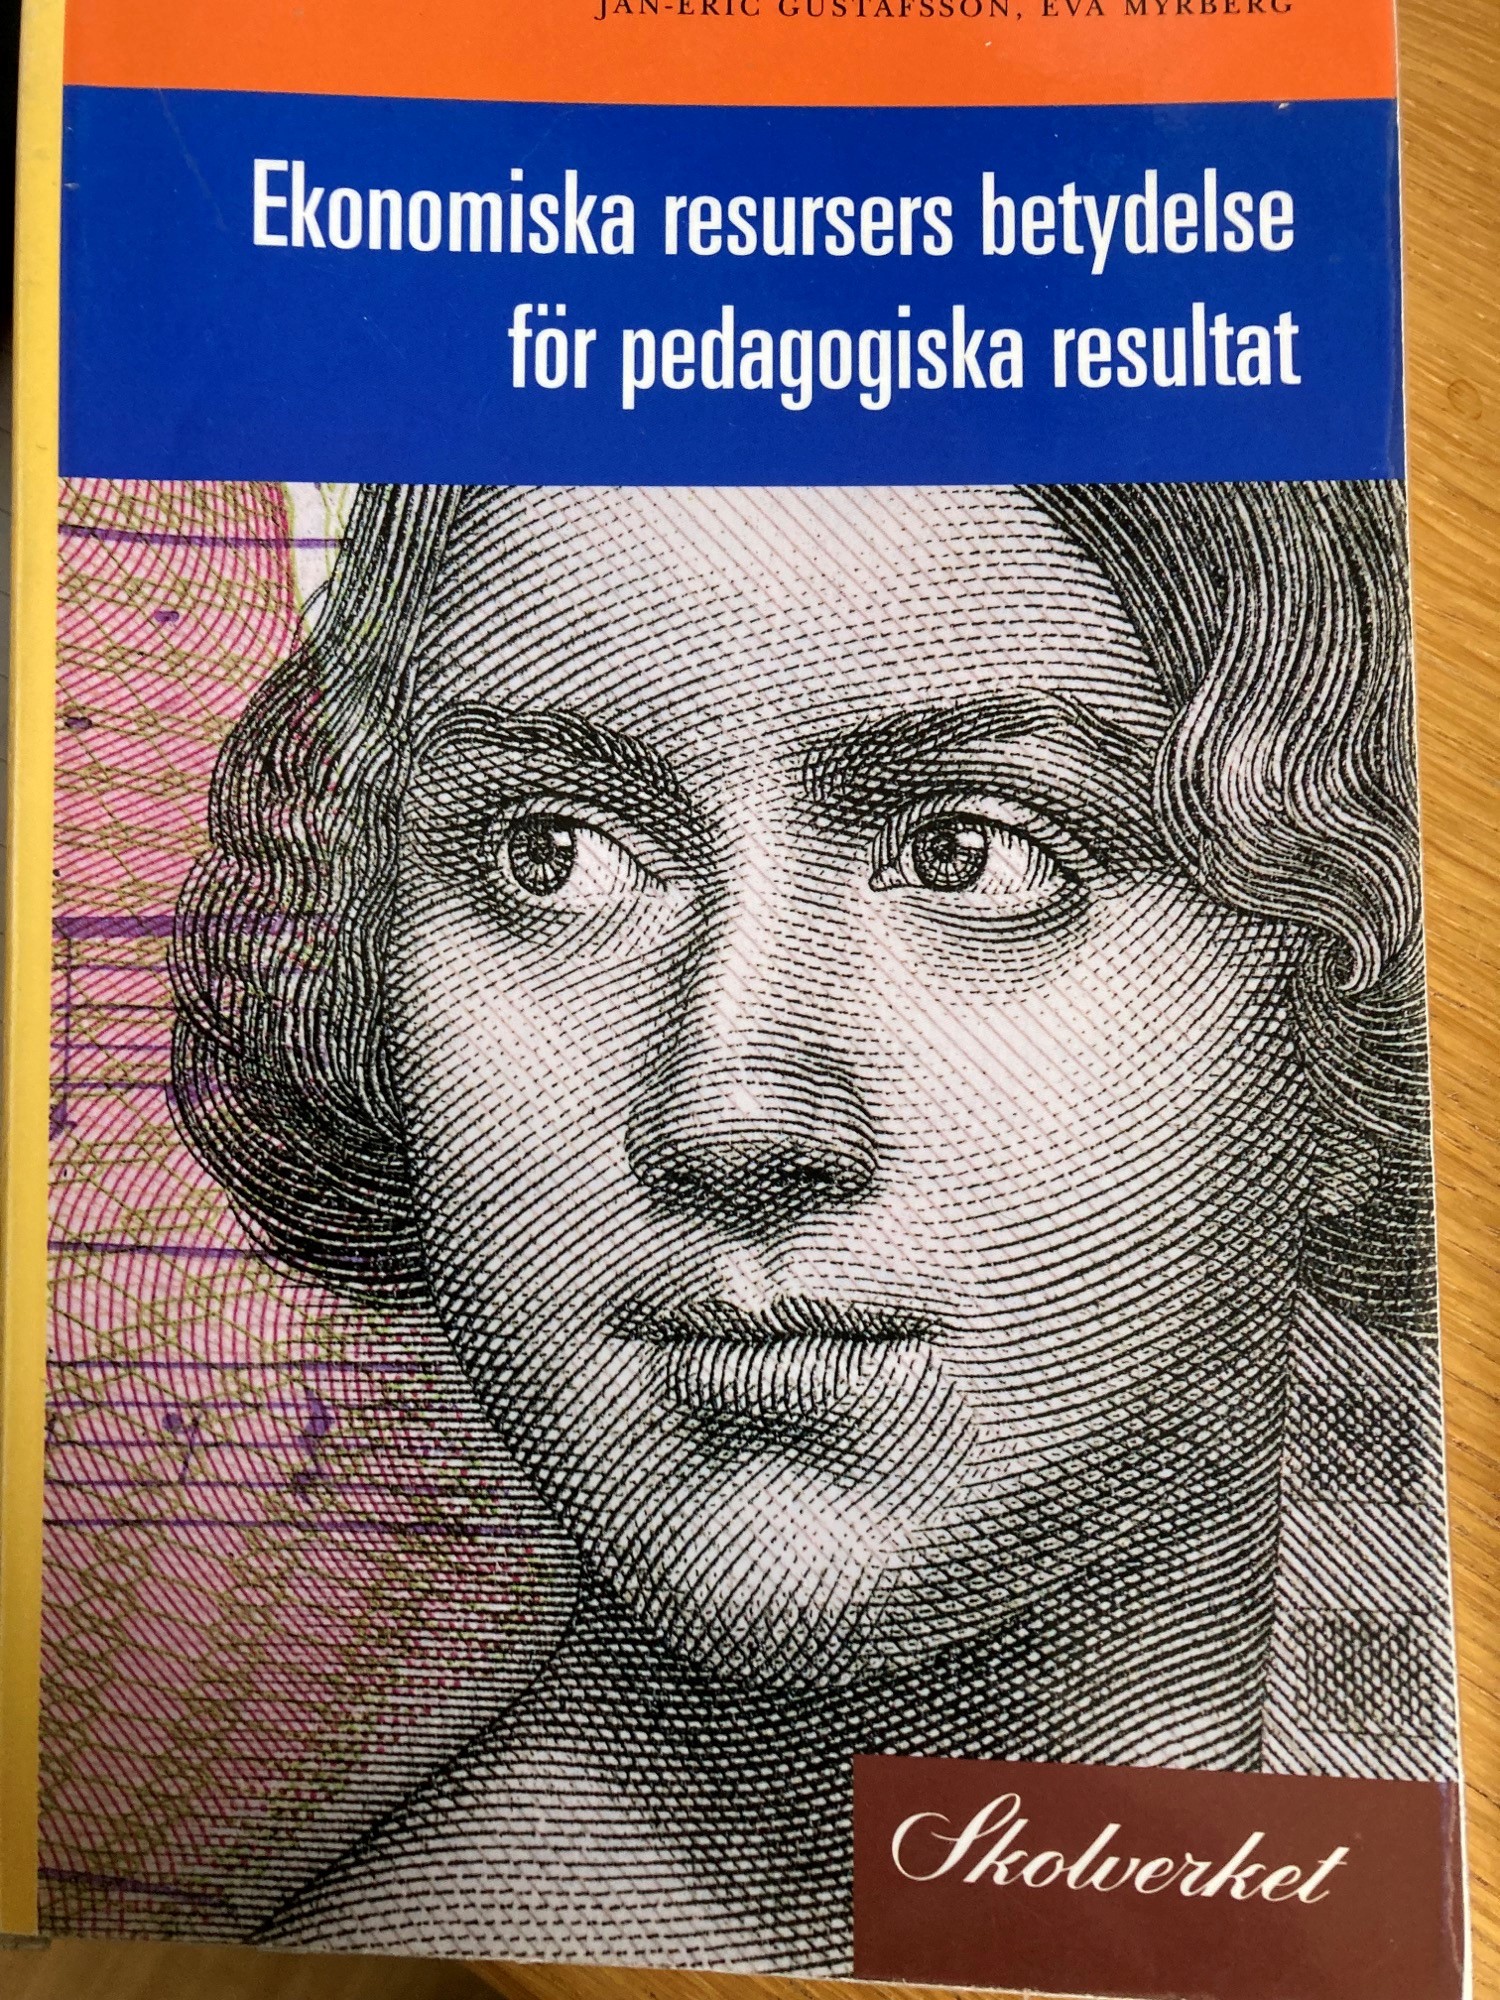 Ekonomiska resursers betydelse för pedagogiska resultat: en kunskapsöversikt; Jan-Eric Gustafsson,Eva Myrberg; 2002